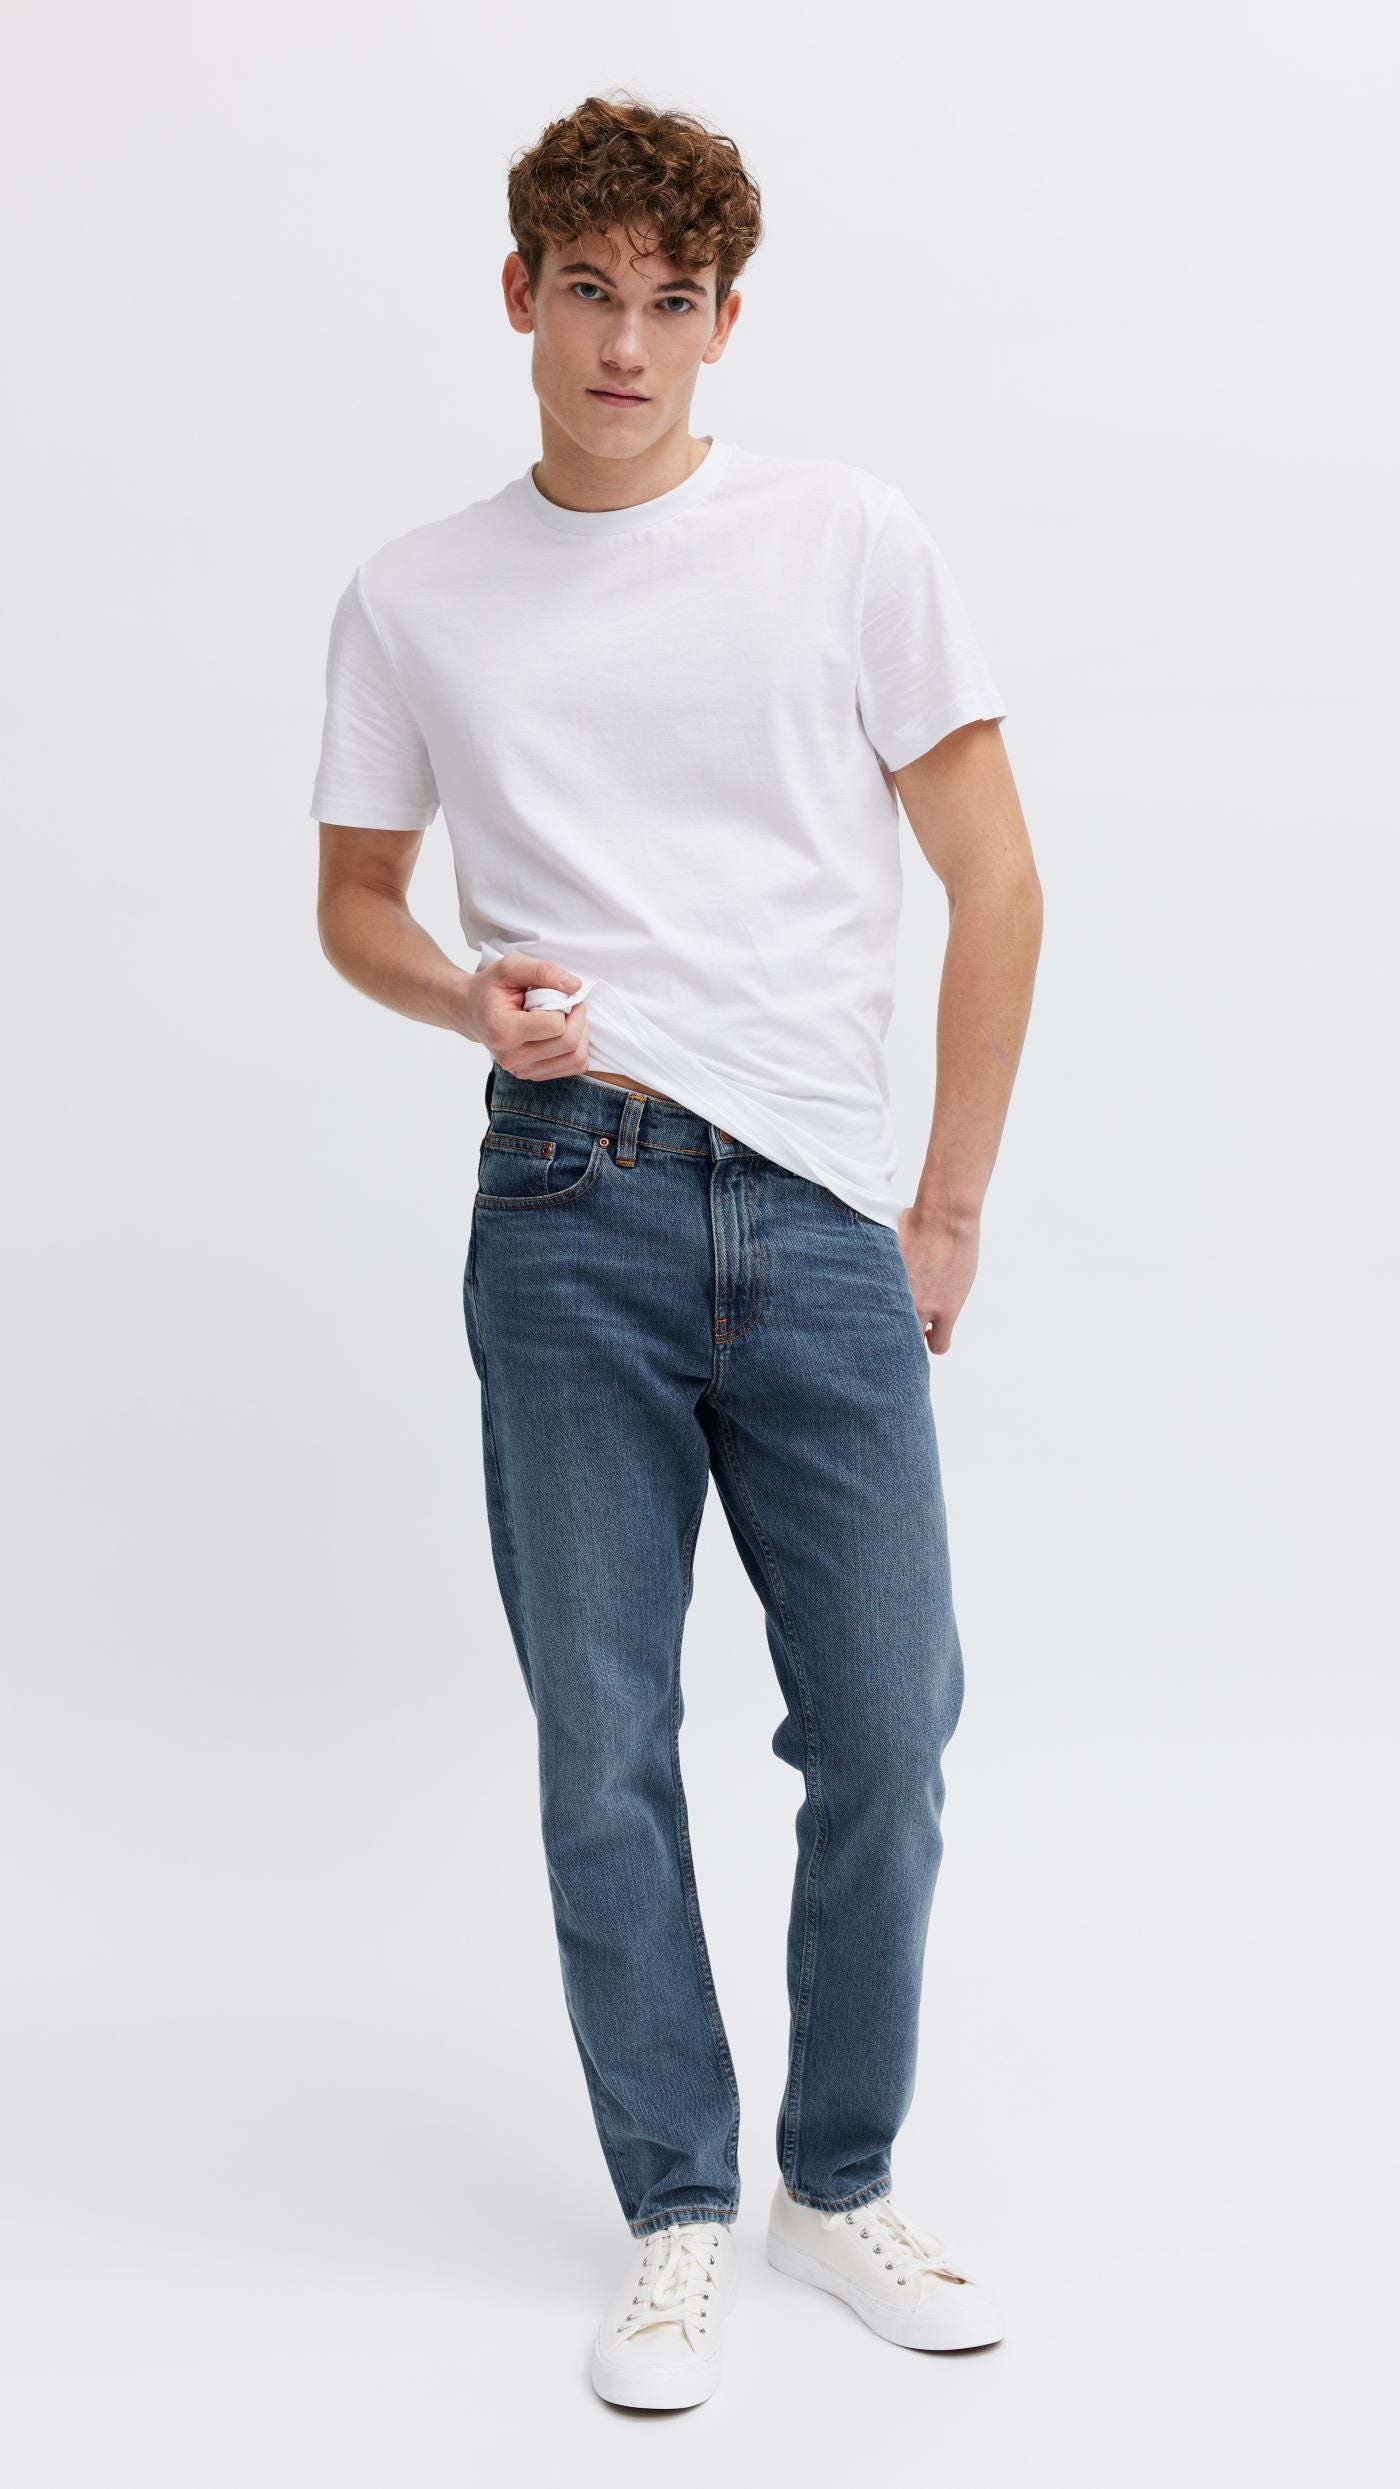 Organic jeans for men